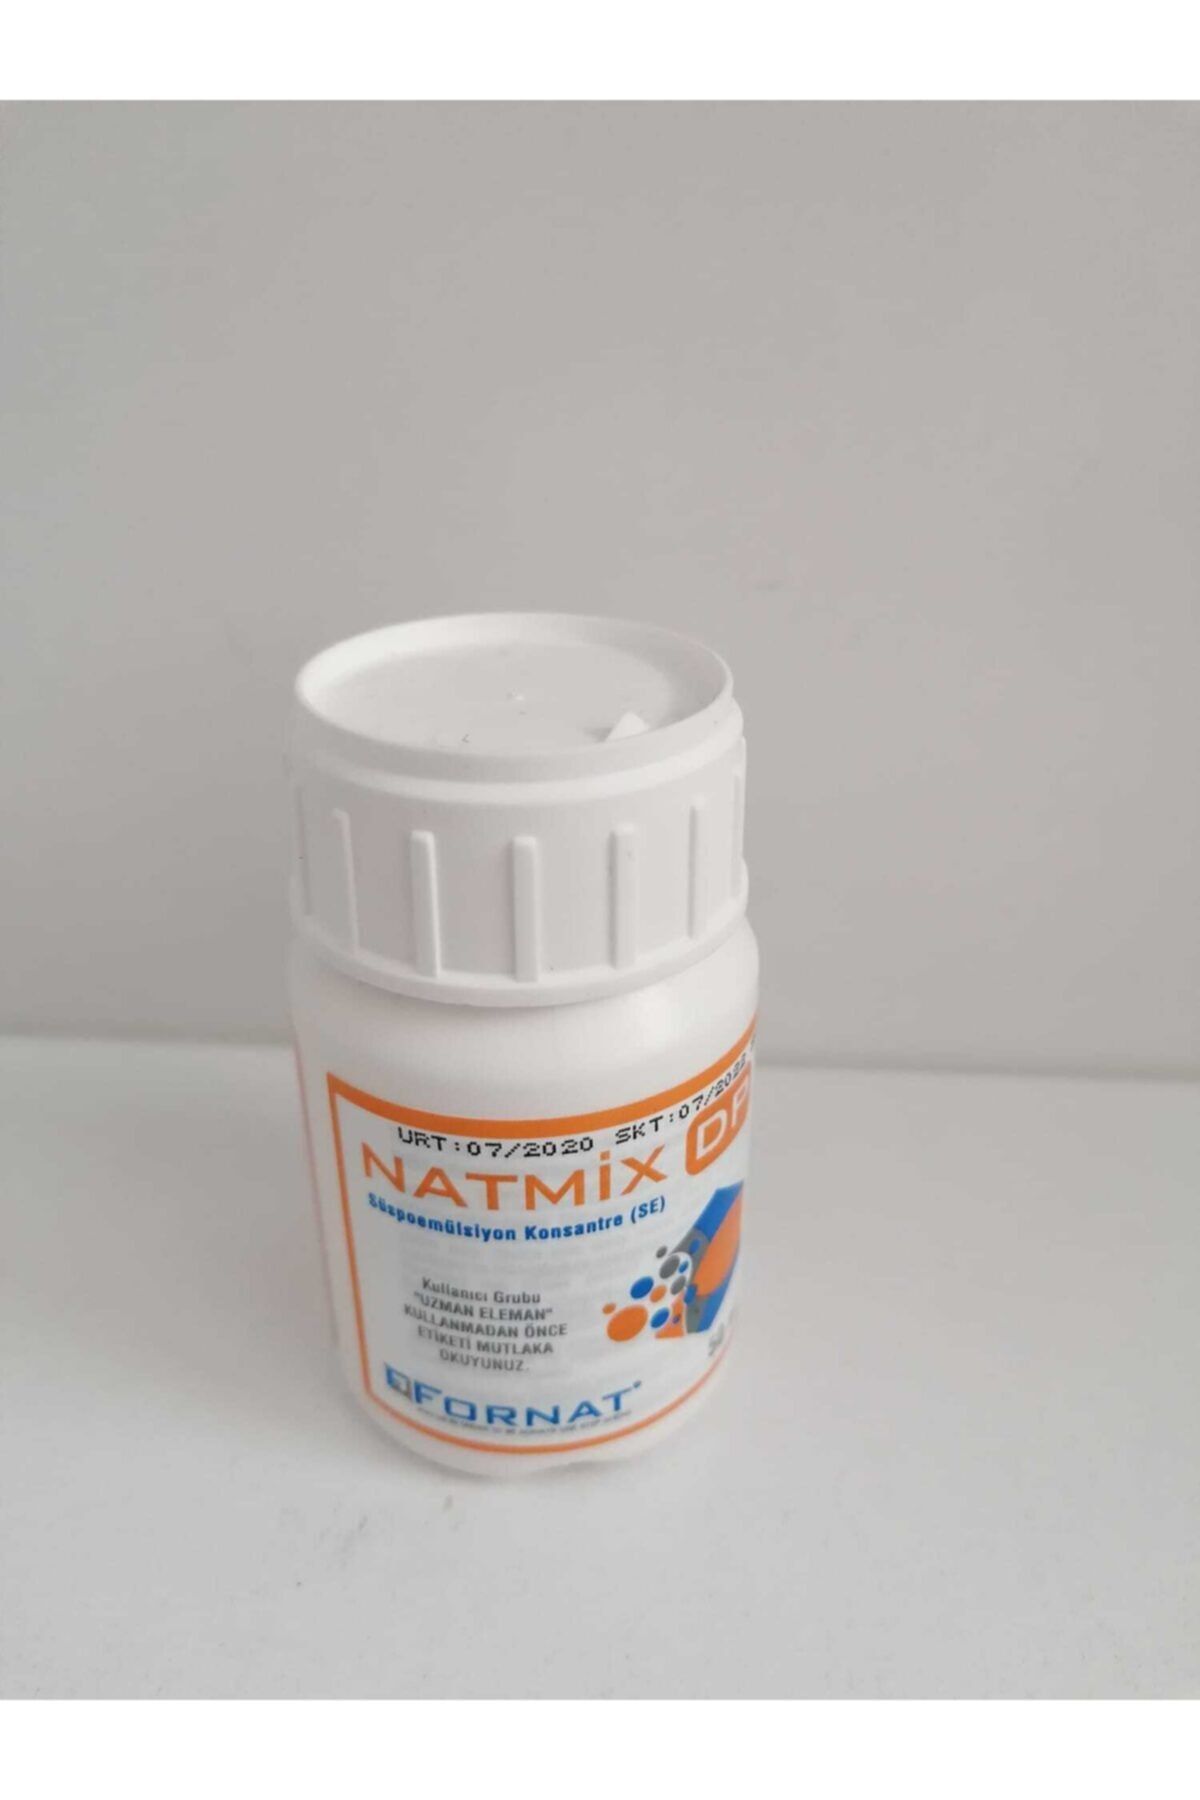 FORNAT Natmix Dp Karasinek,pire,kene,hamamböceği,karasinek Larvasit Haşere Ilacı 50 ml